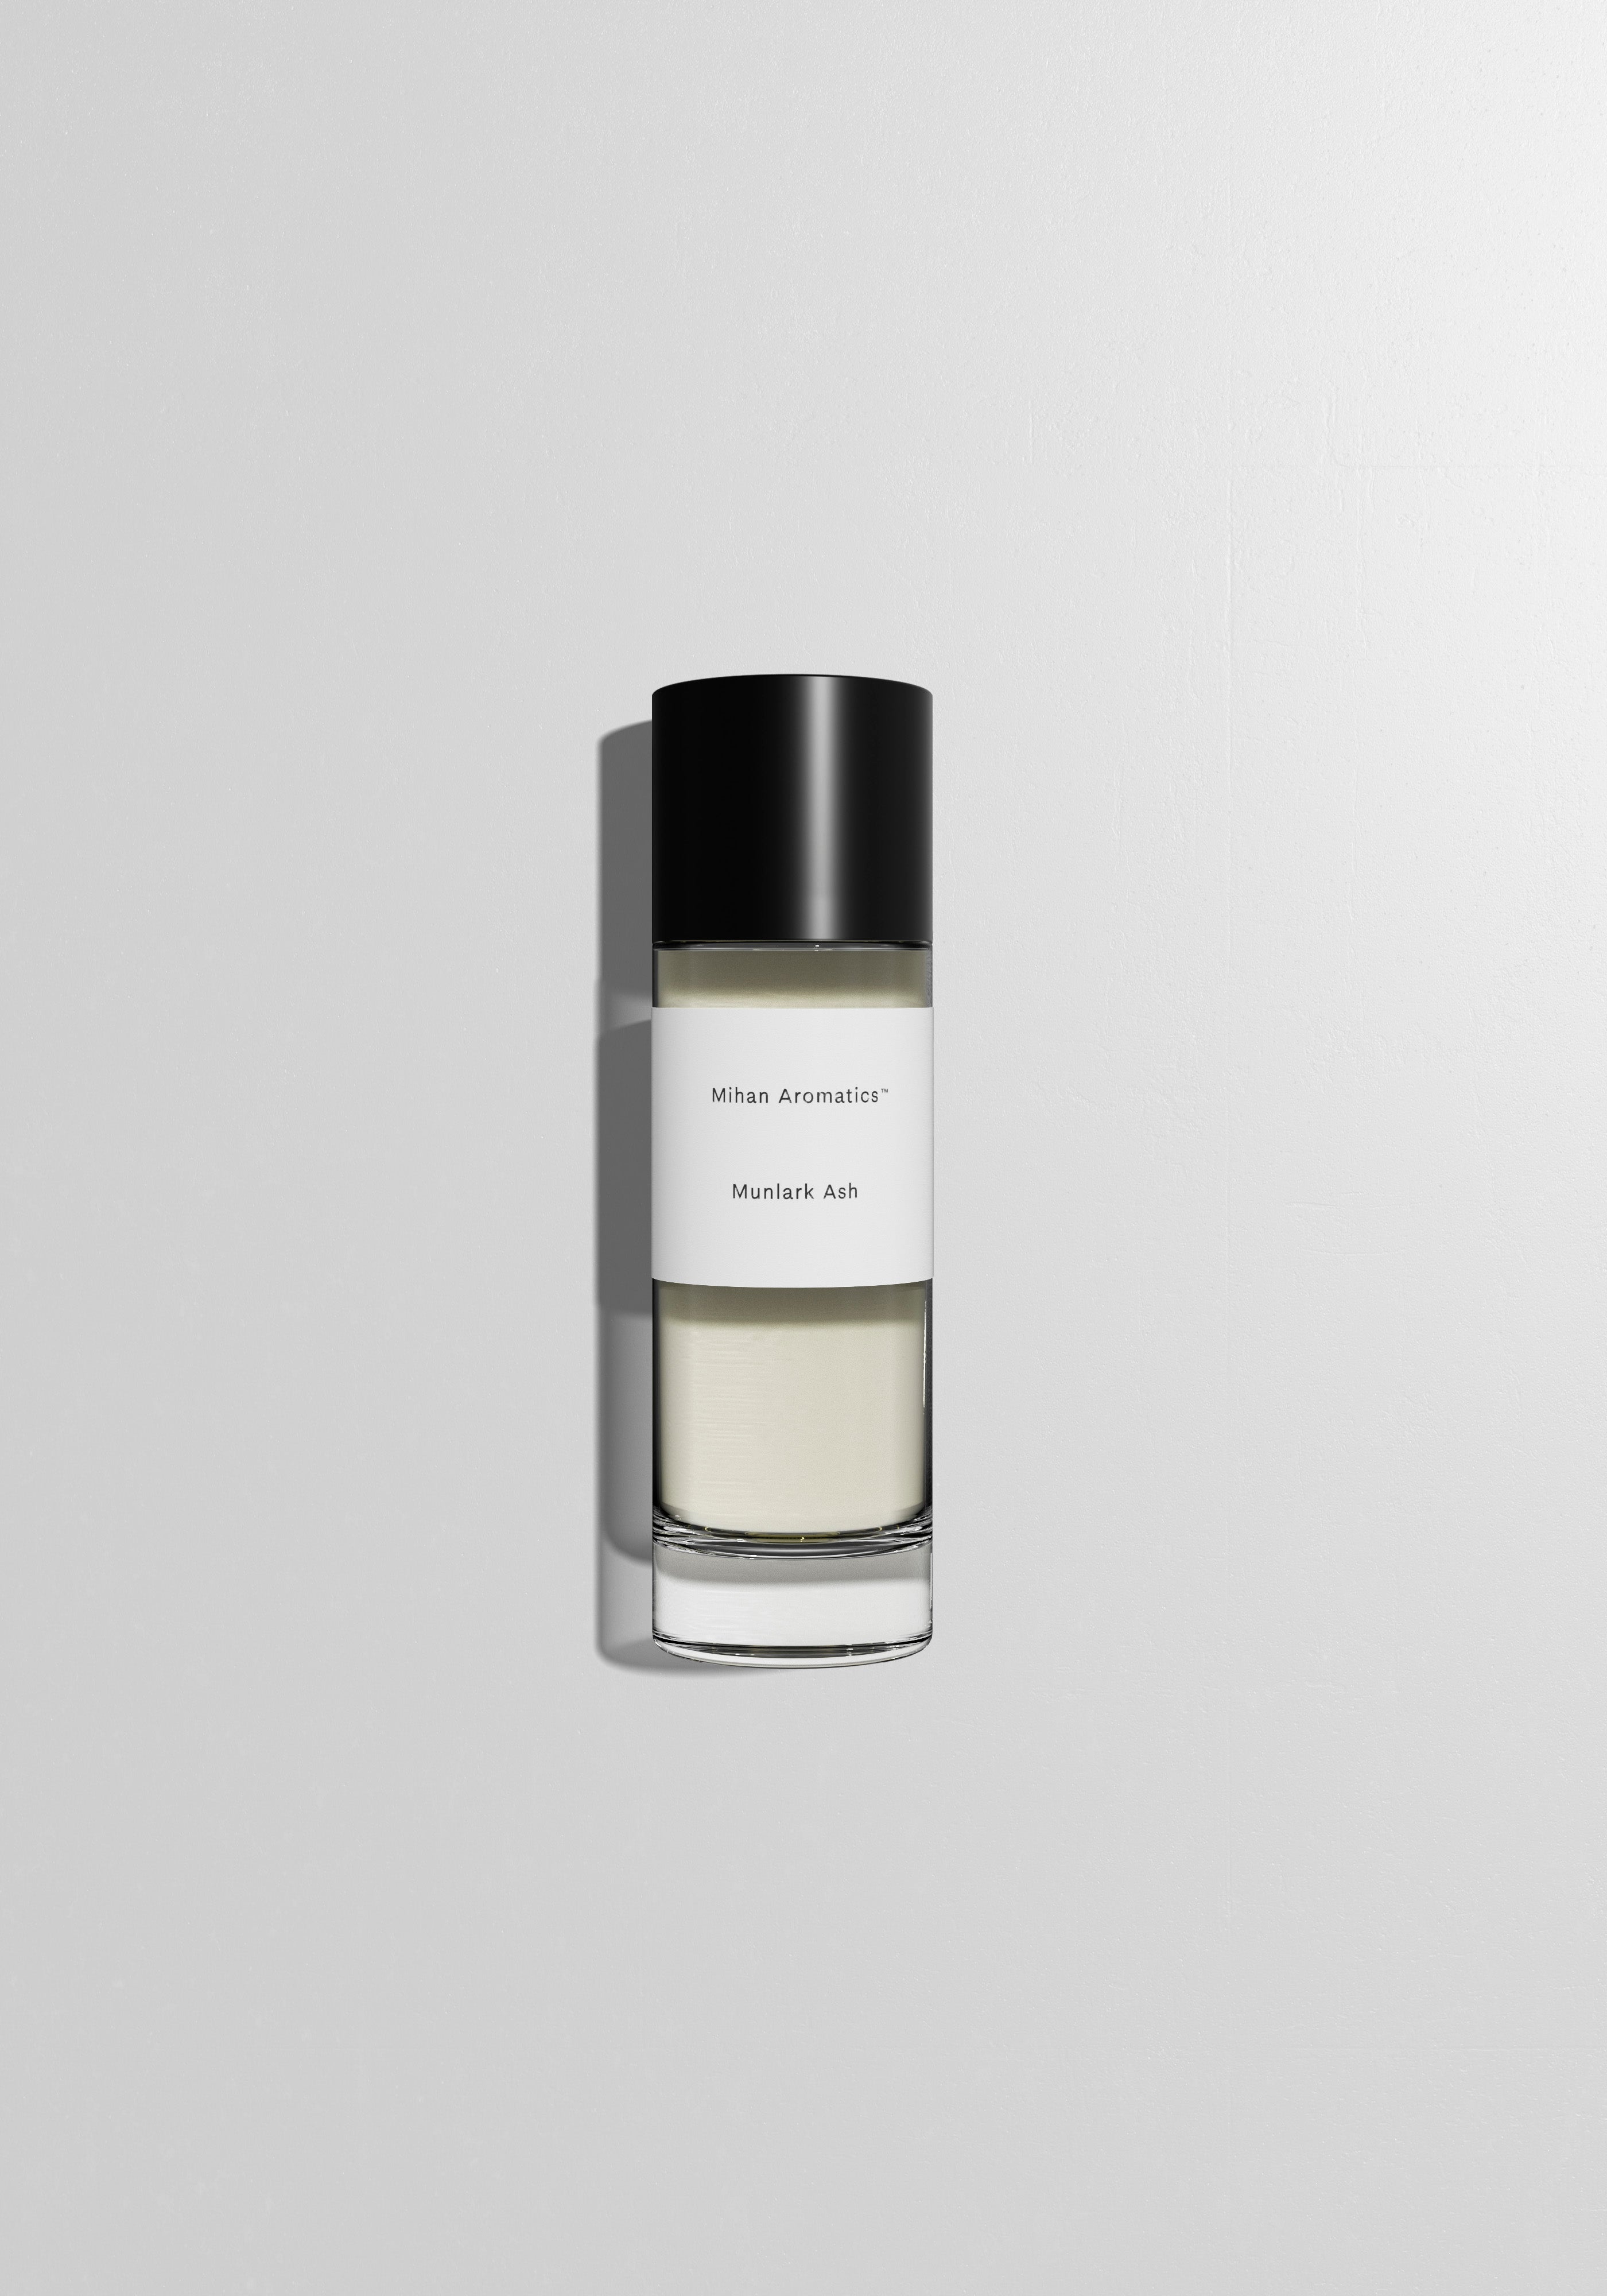 Mihan Aromatics™ Munlark Ash Parfum - Stèle